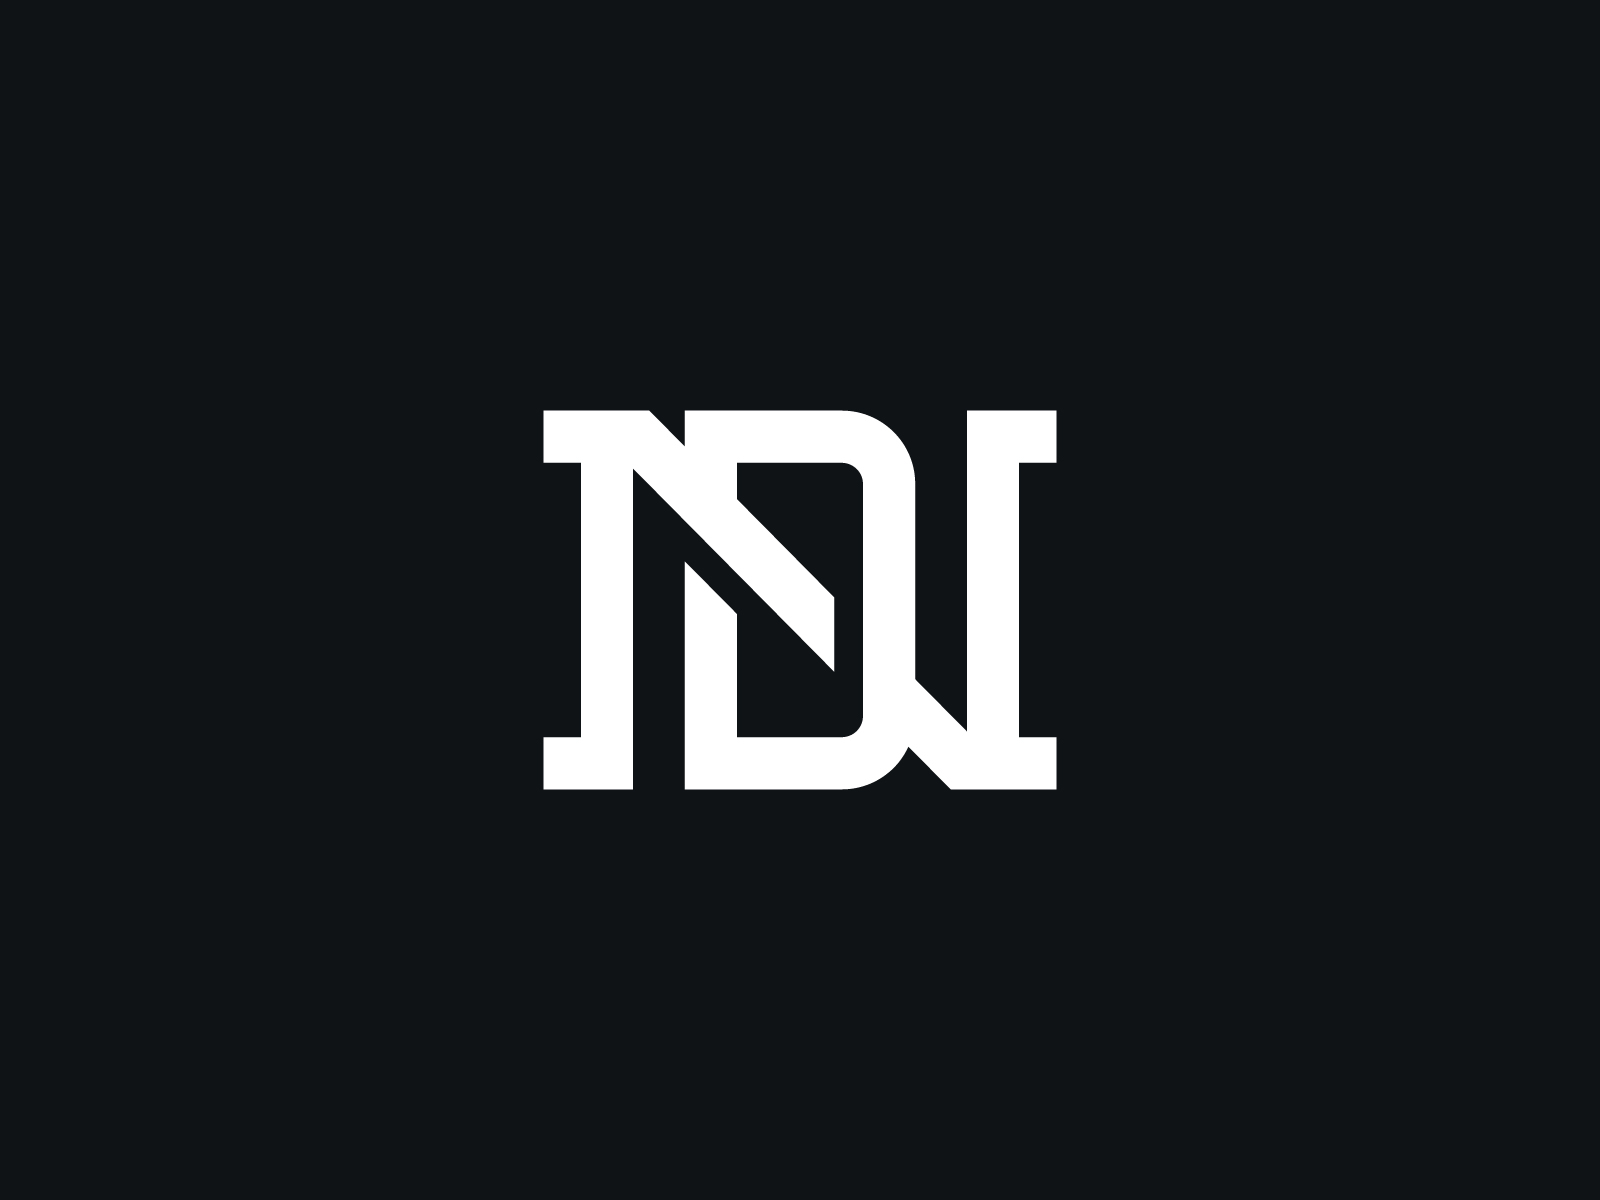 HD nd logo wallpapers | Peakpx